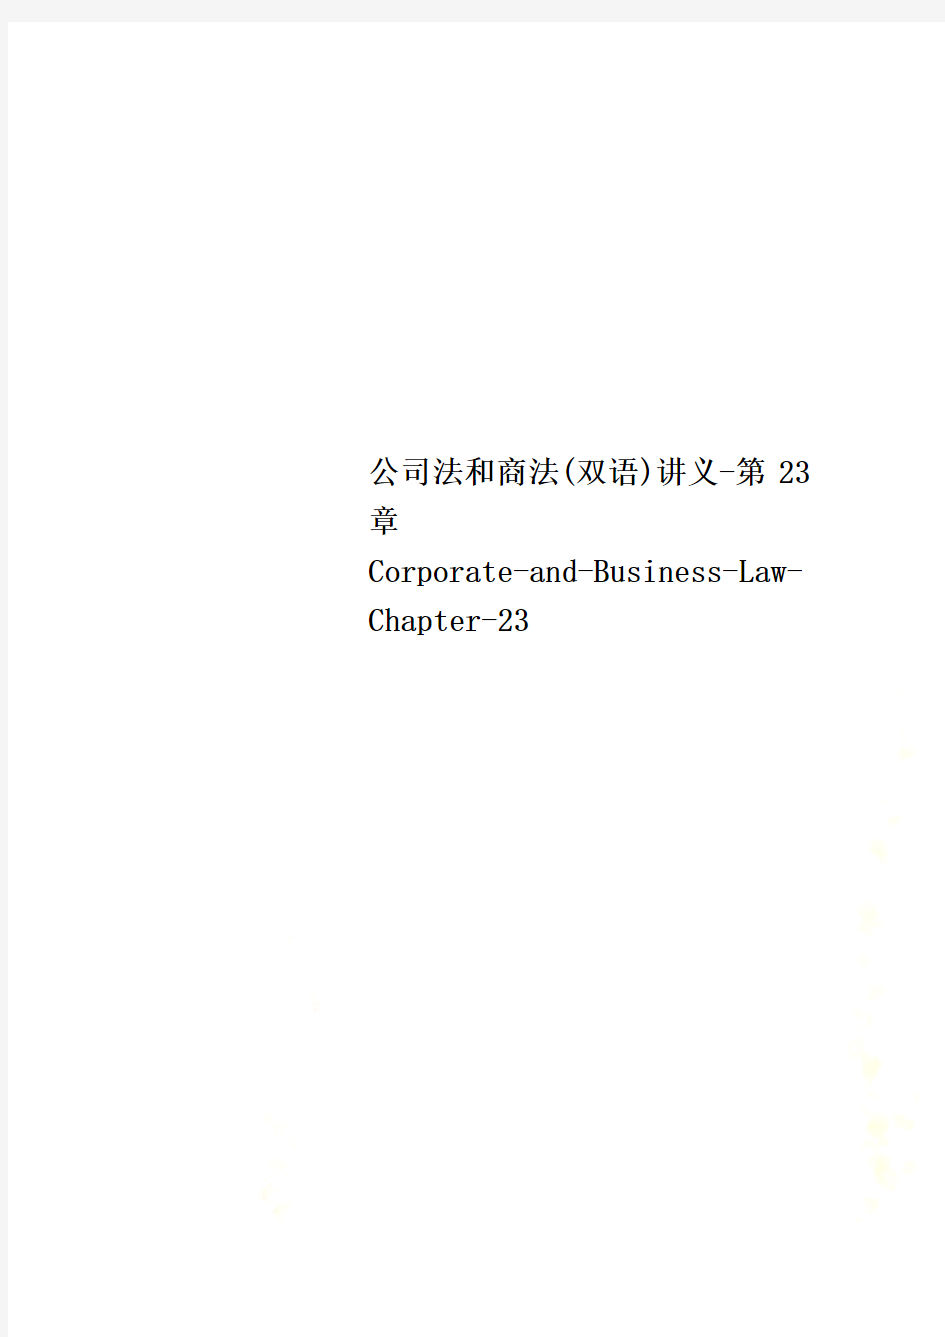 公司法和商法(双语)讲义-第23章Corporate-and-Business-Law-Chapter-23